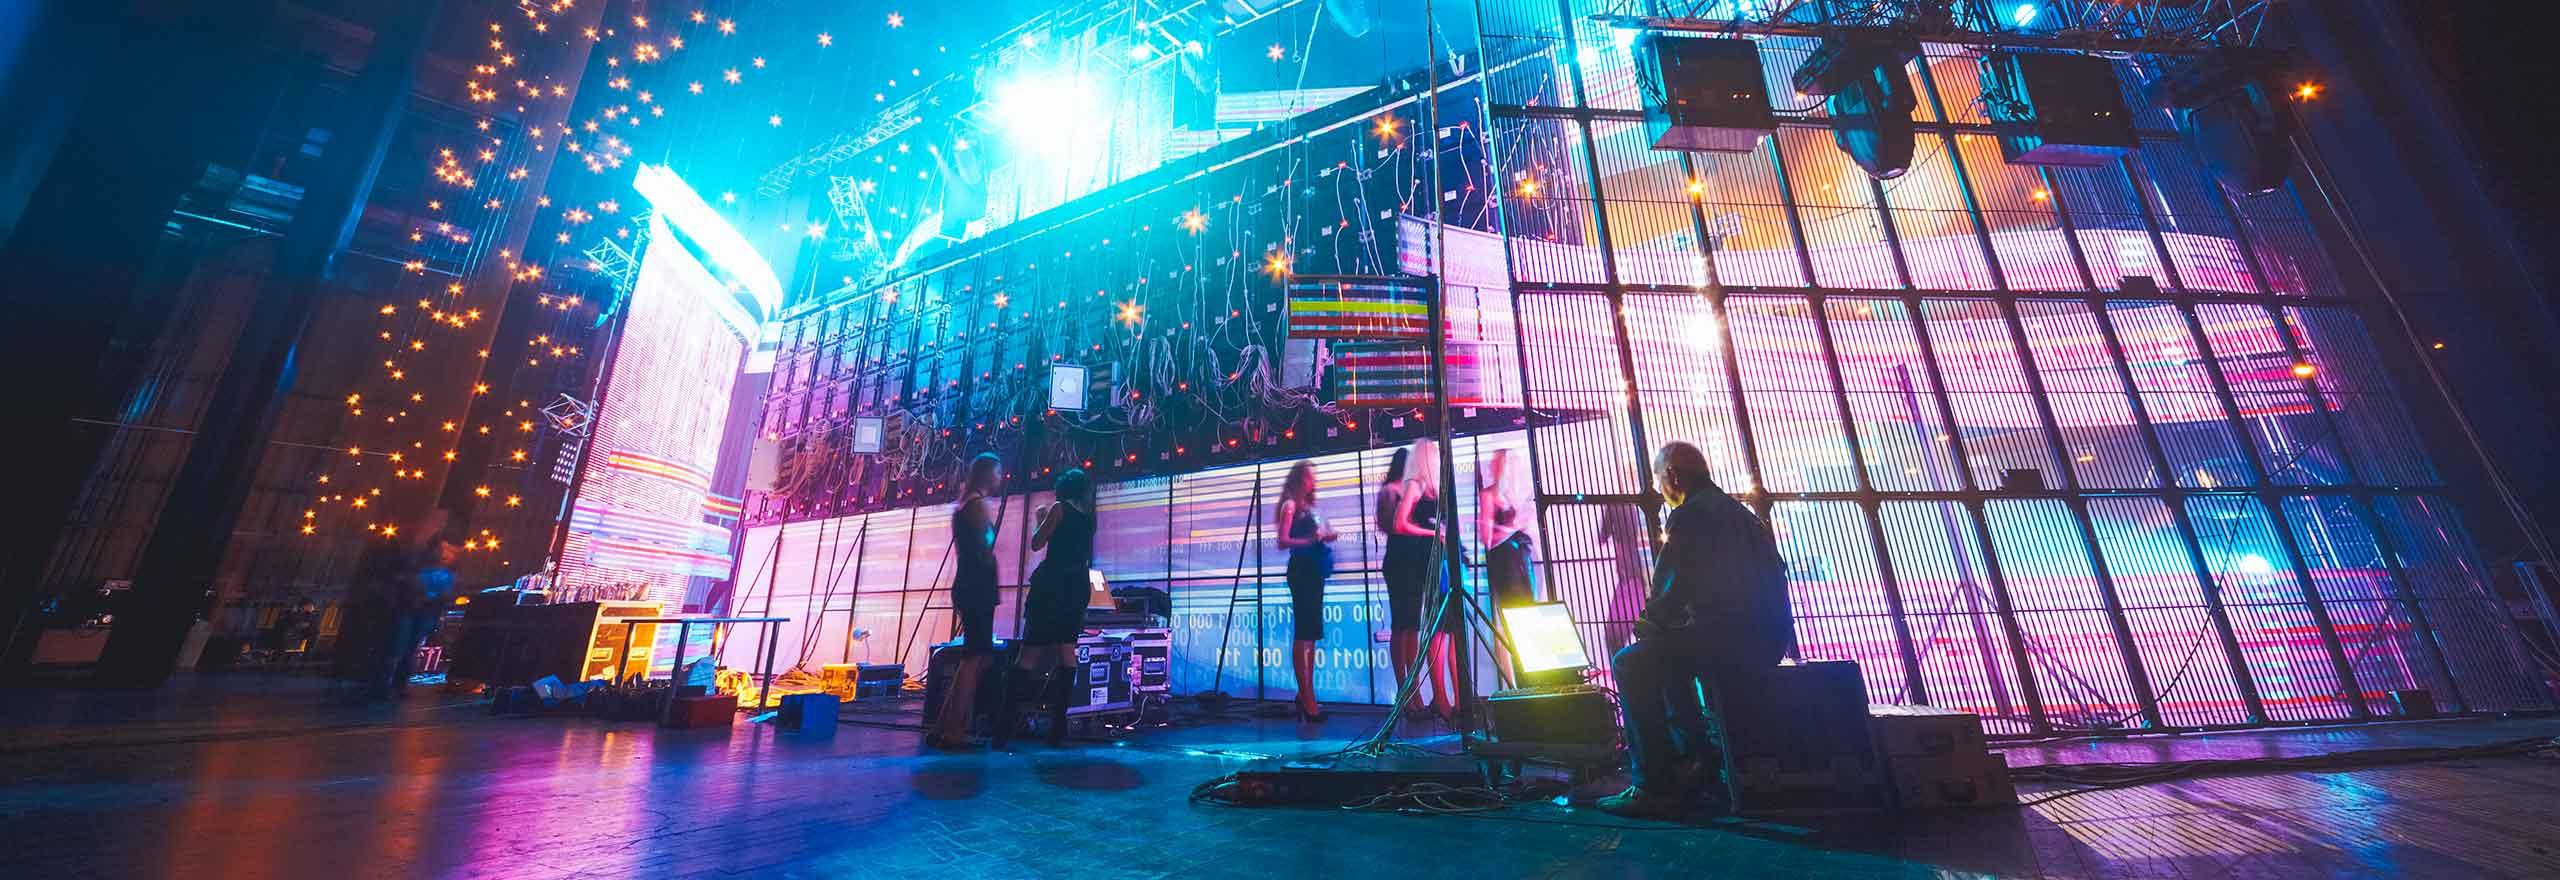 Stilisiertes Bild einer Szene hinter der Bühne bei einer formellen Unterhaltungsveranstaltung.